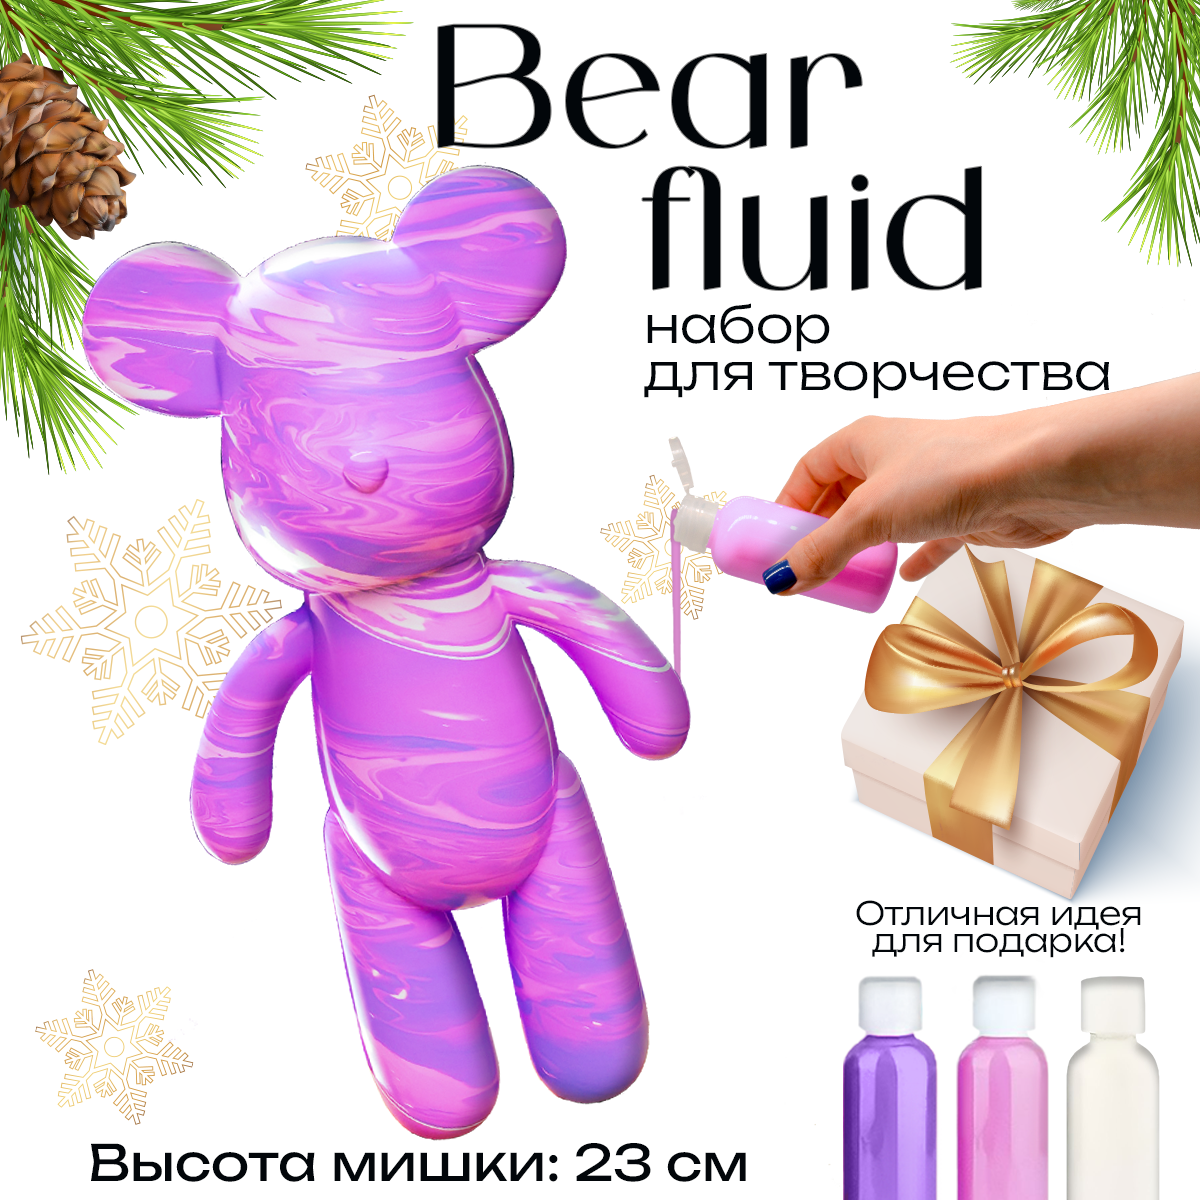 BearBrick игрушка Медведь 23 см, флюид арт набор творчества для взрослых и детей, розовый, сиреневый, белый цвет, Cozy&Dozy